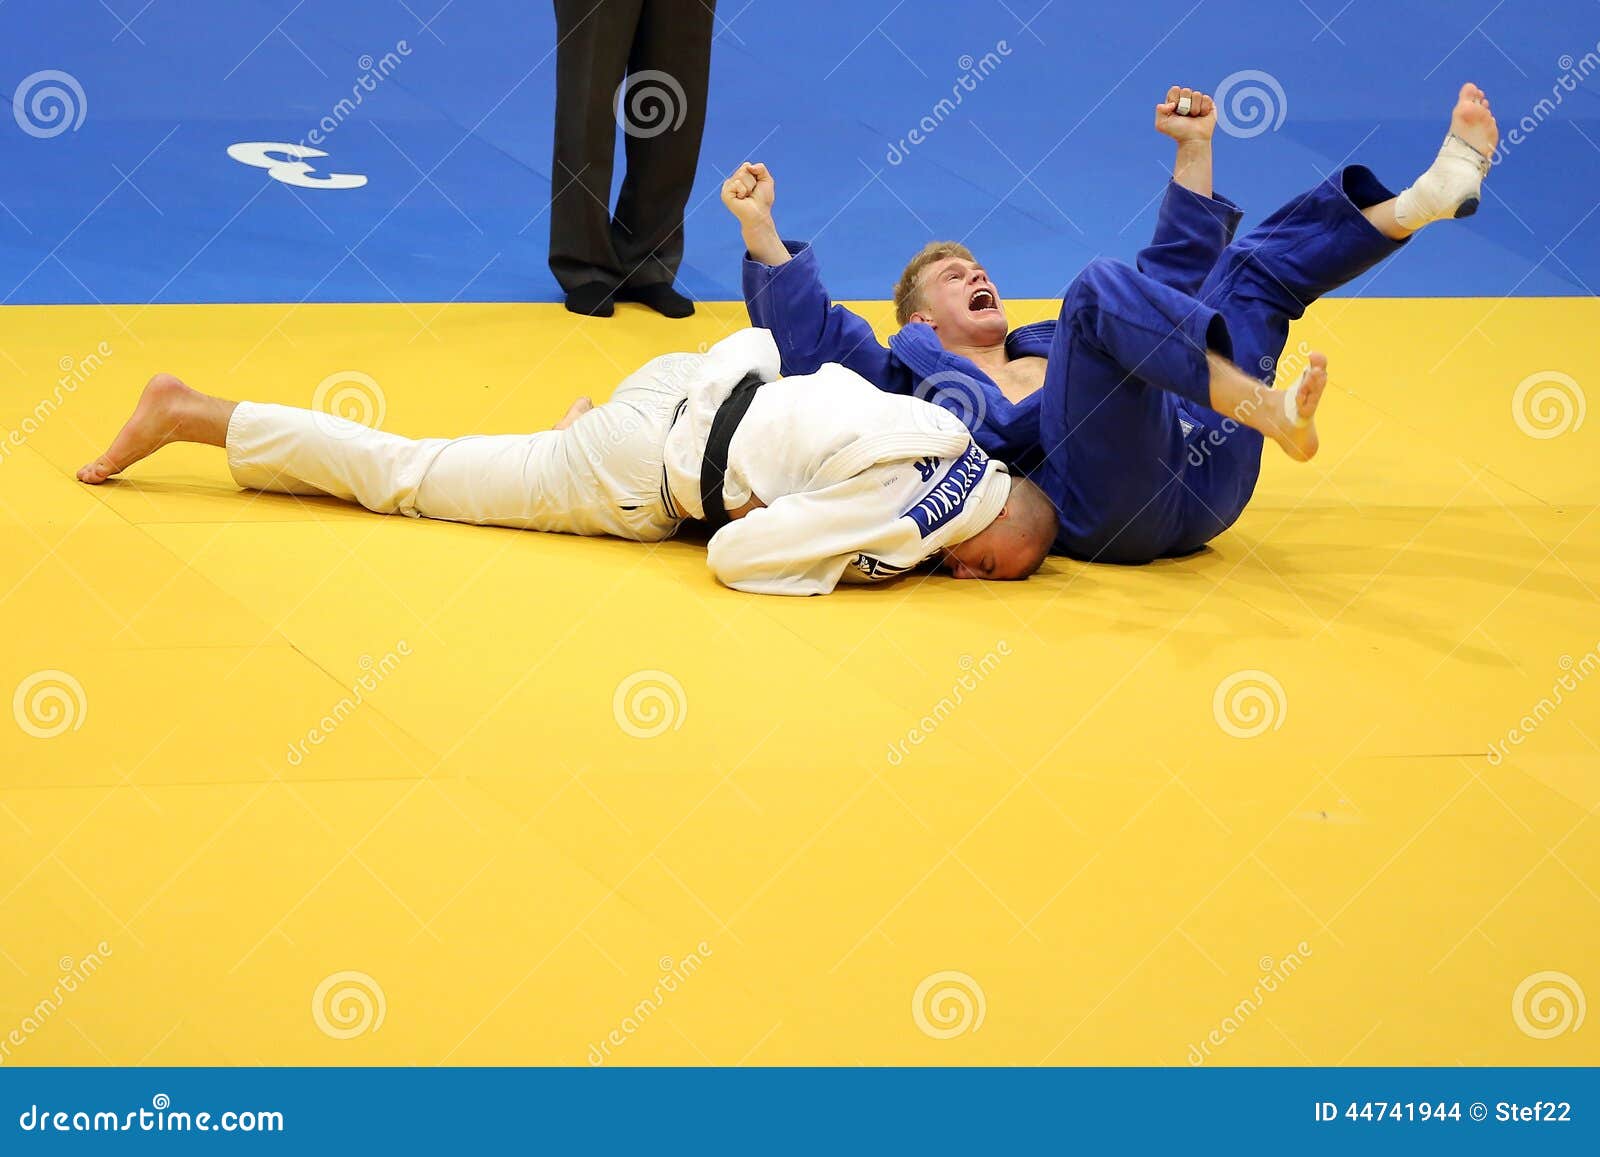 Judô - celebração de vitória. Philipp Galandi (no azul) de Alemanha que comemora sua vitória sobre Anton Savytskiy (no branco) de Ucrânia durante campeonatos europeus do judô para os júniors individuais realizados em Bucareste